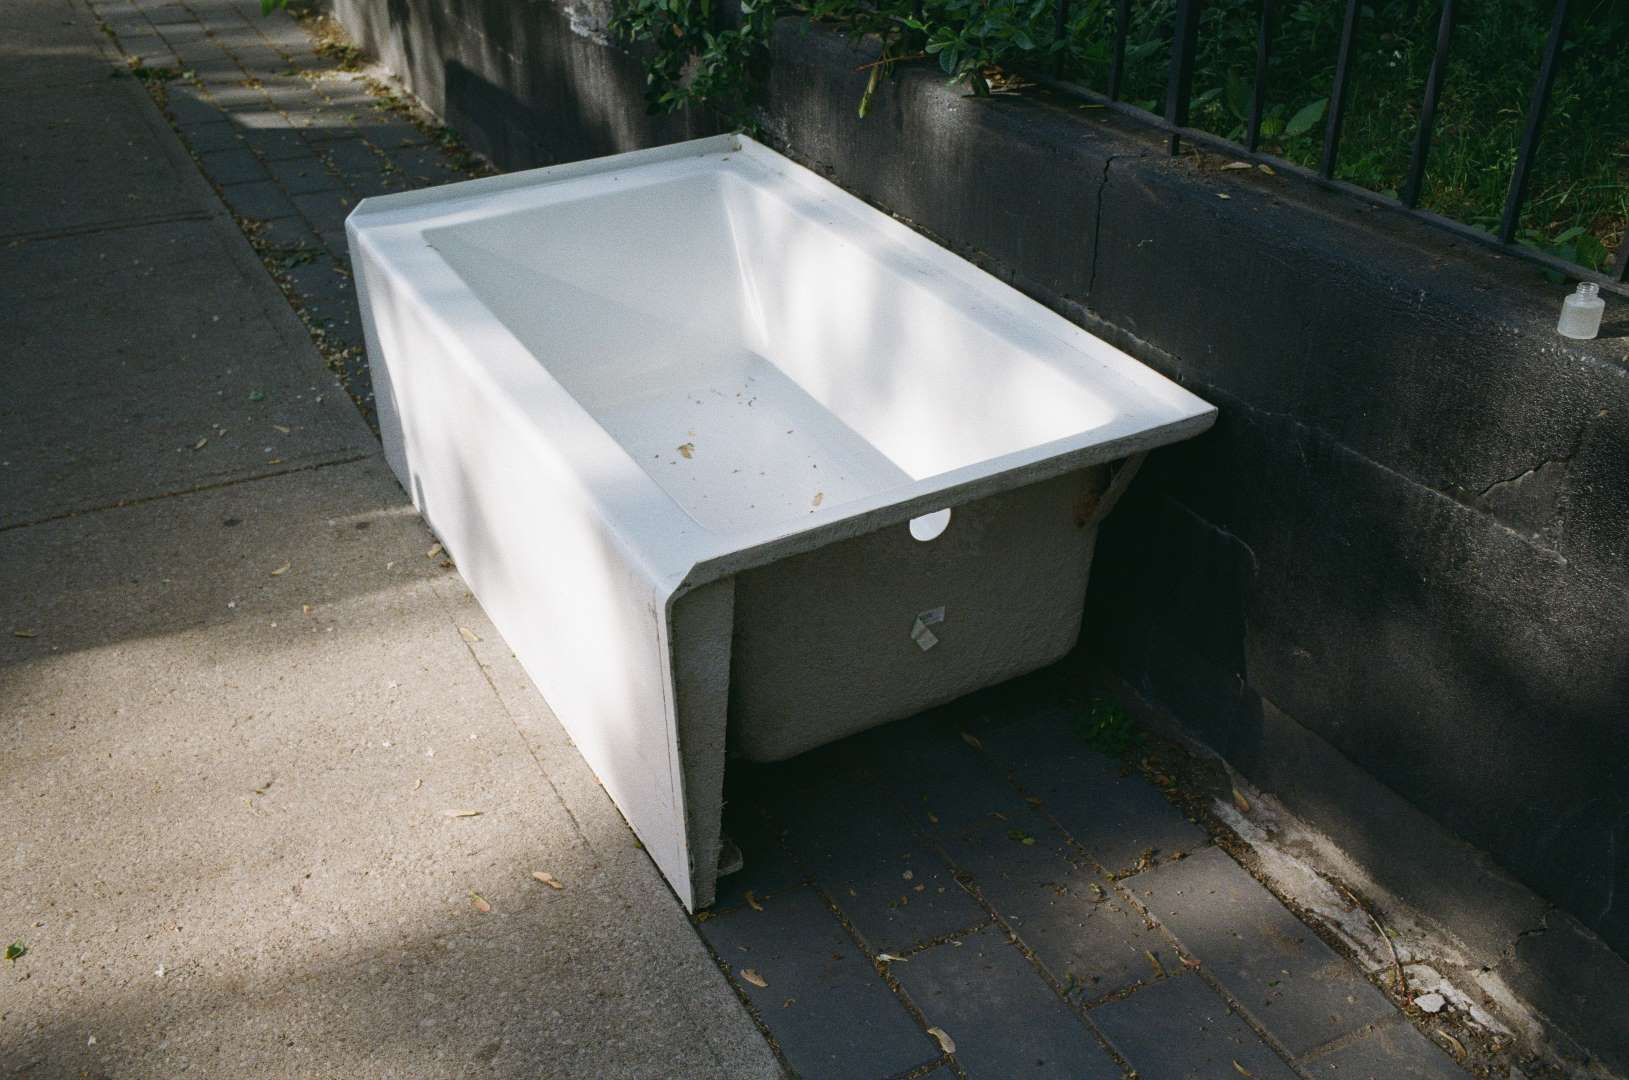 A colour photograph of a bathtub left on the sidewalk